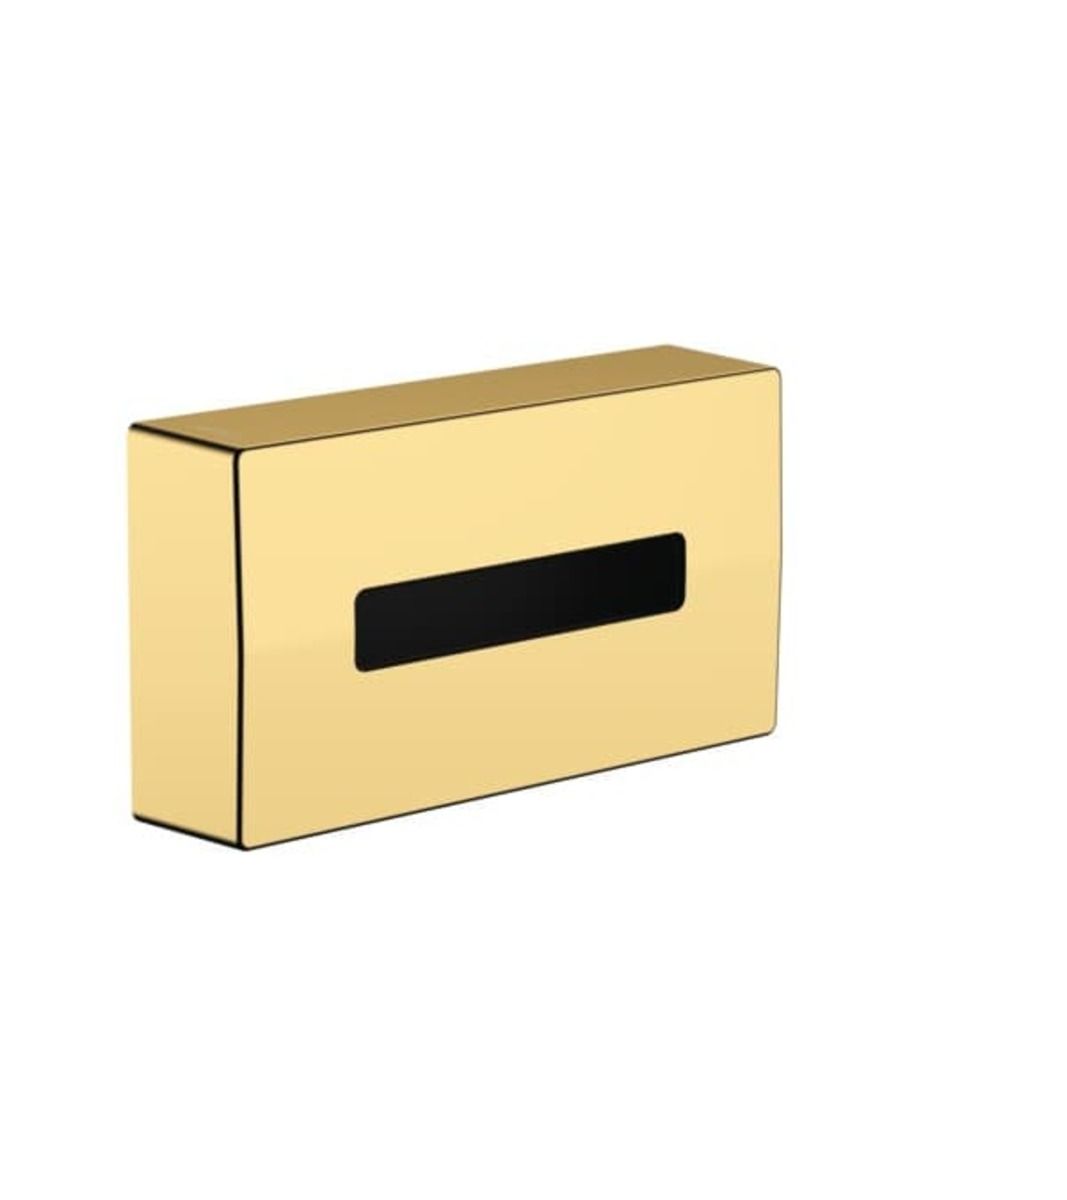 Zásobník na hygienické sáčky Hansgrohe AddStoris leštěný vzhled zlata 41774990 - Siko - koupelny - kuchyně